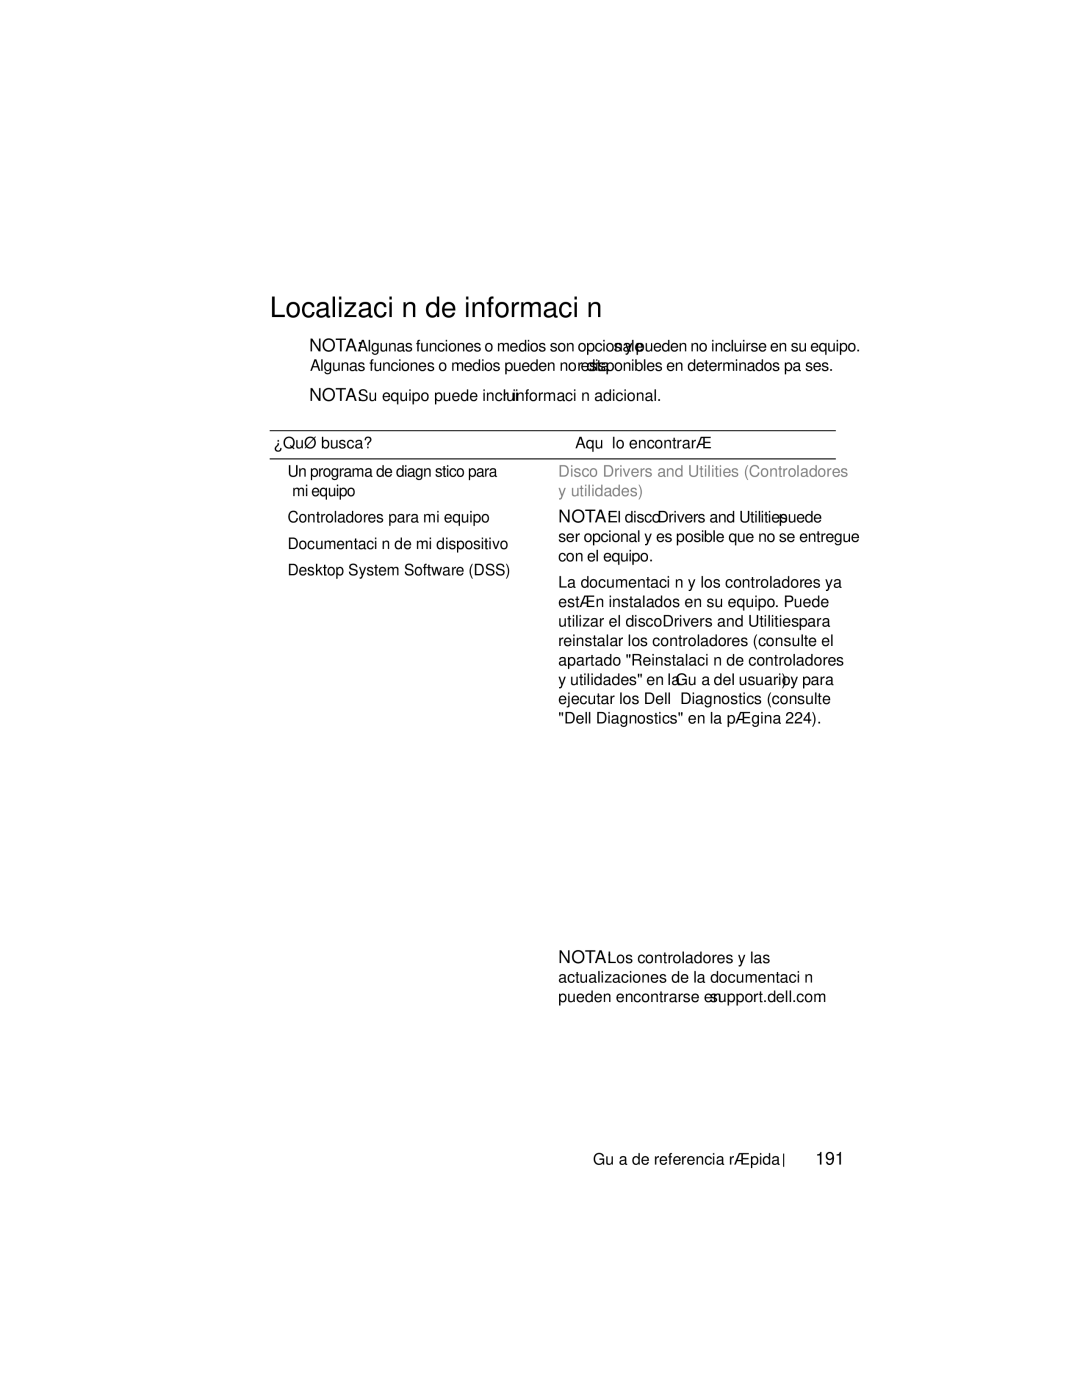 Dell DCDO manual Localización de información, 191, ¿Qué busca?, Disco Drivers and Utilities Controladores y utilidades 